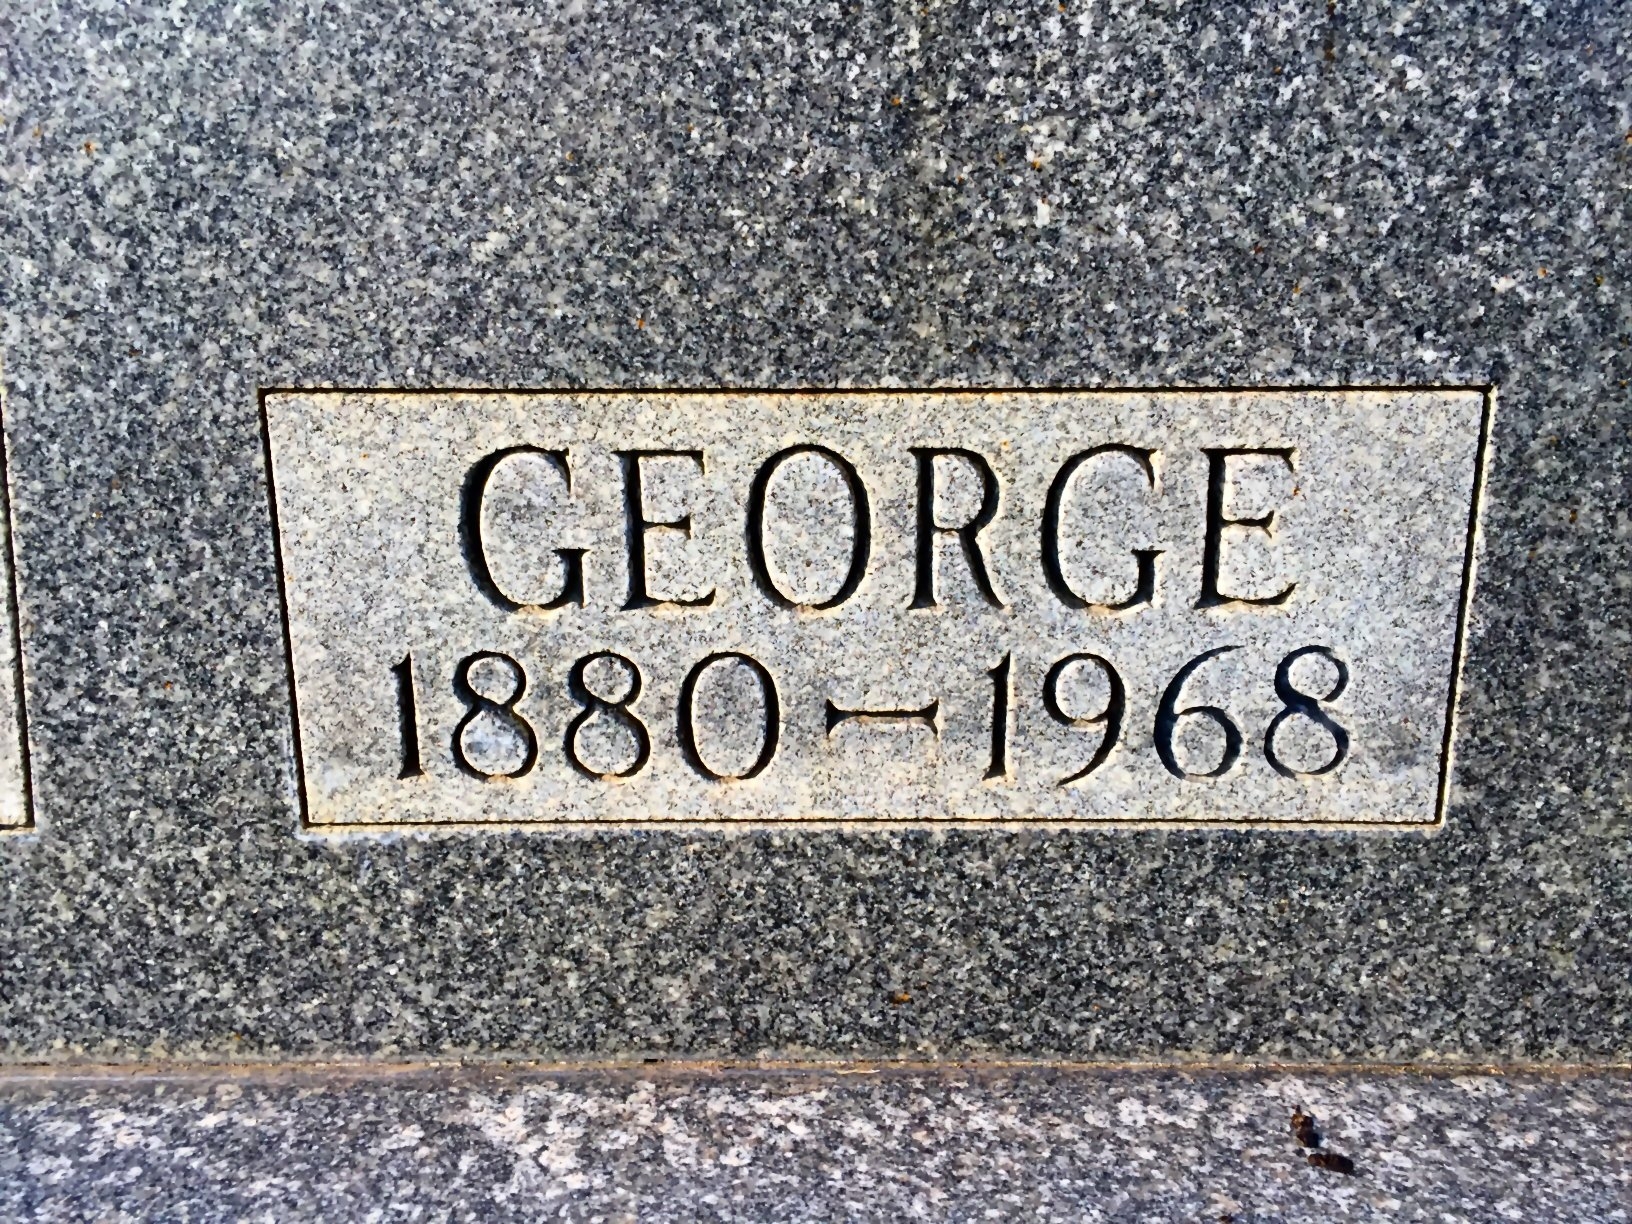 George Baciu gravesite 